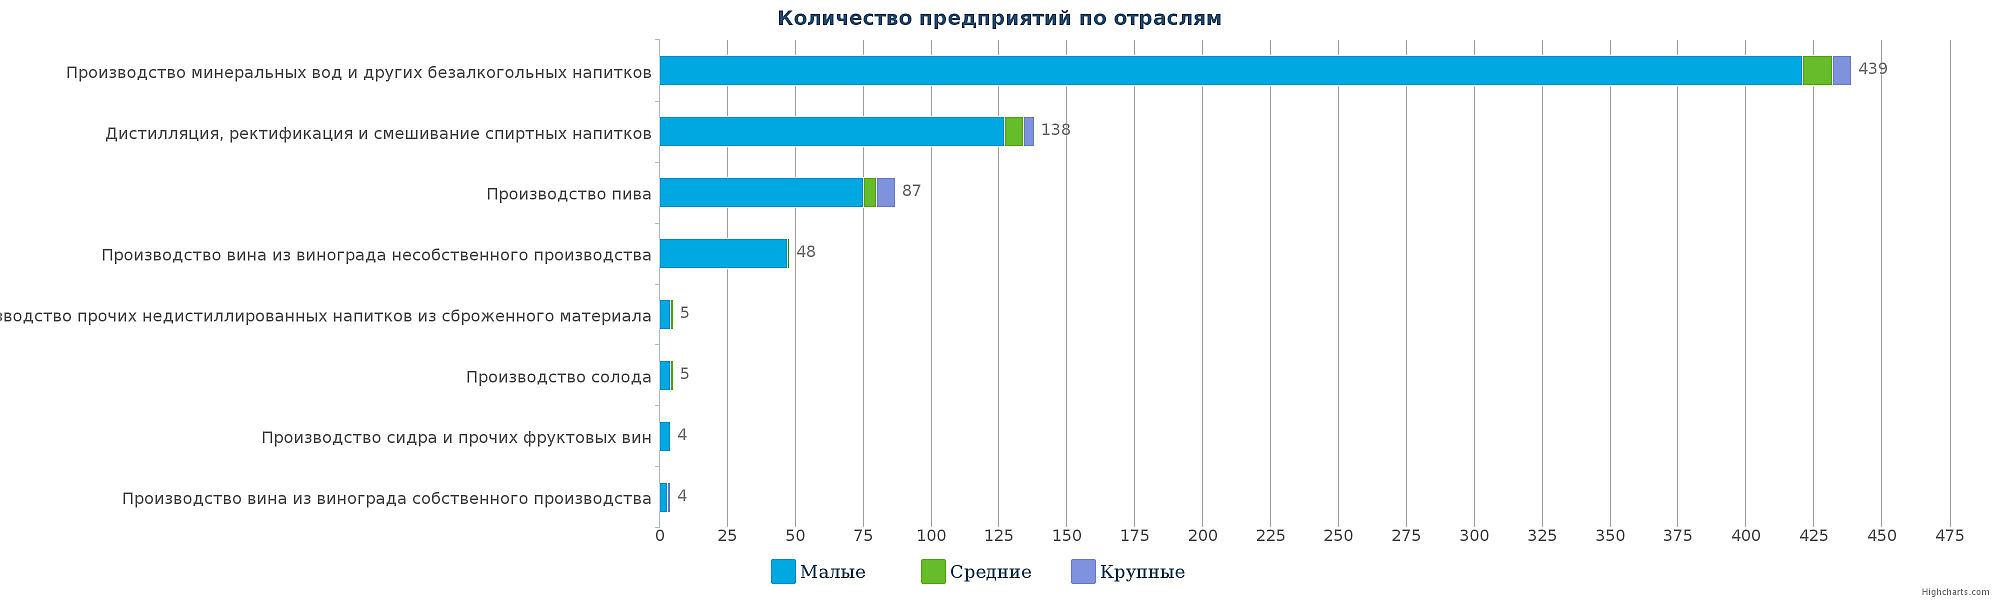 Количество компаний, которые производят напитки в Казахстане по видам деятельности на 17.11.2016